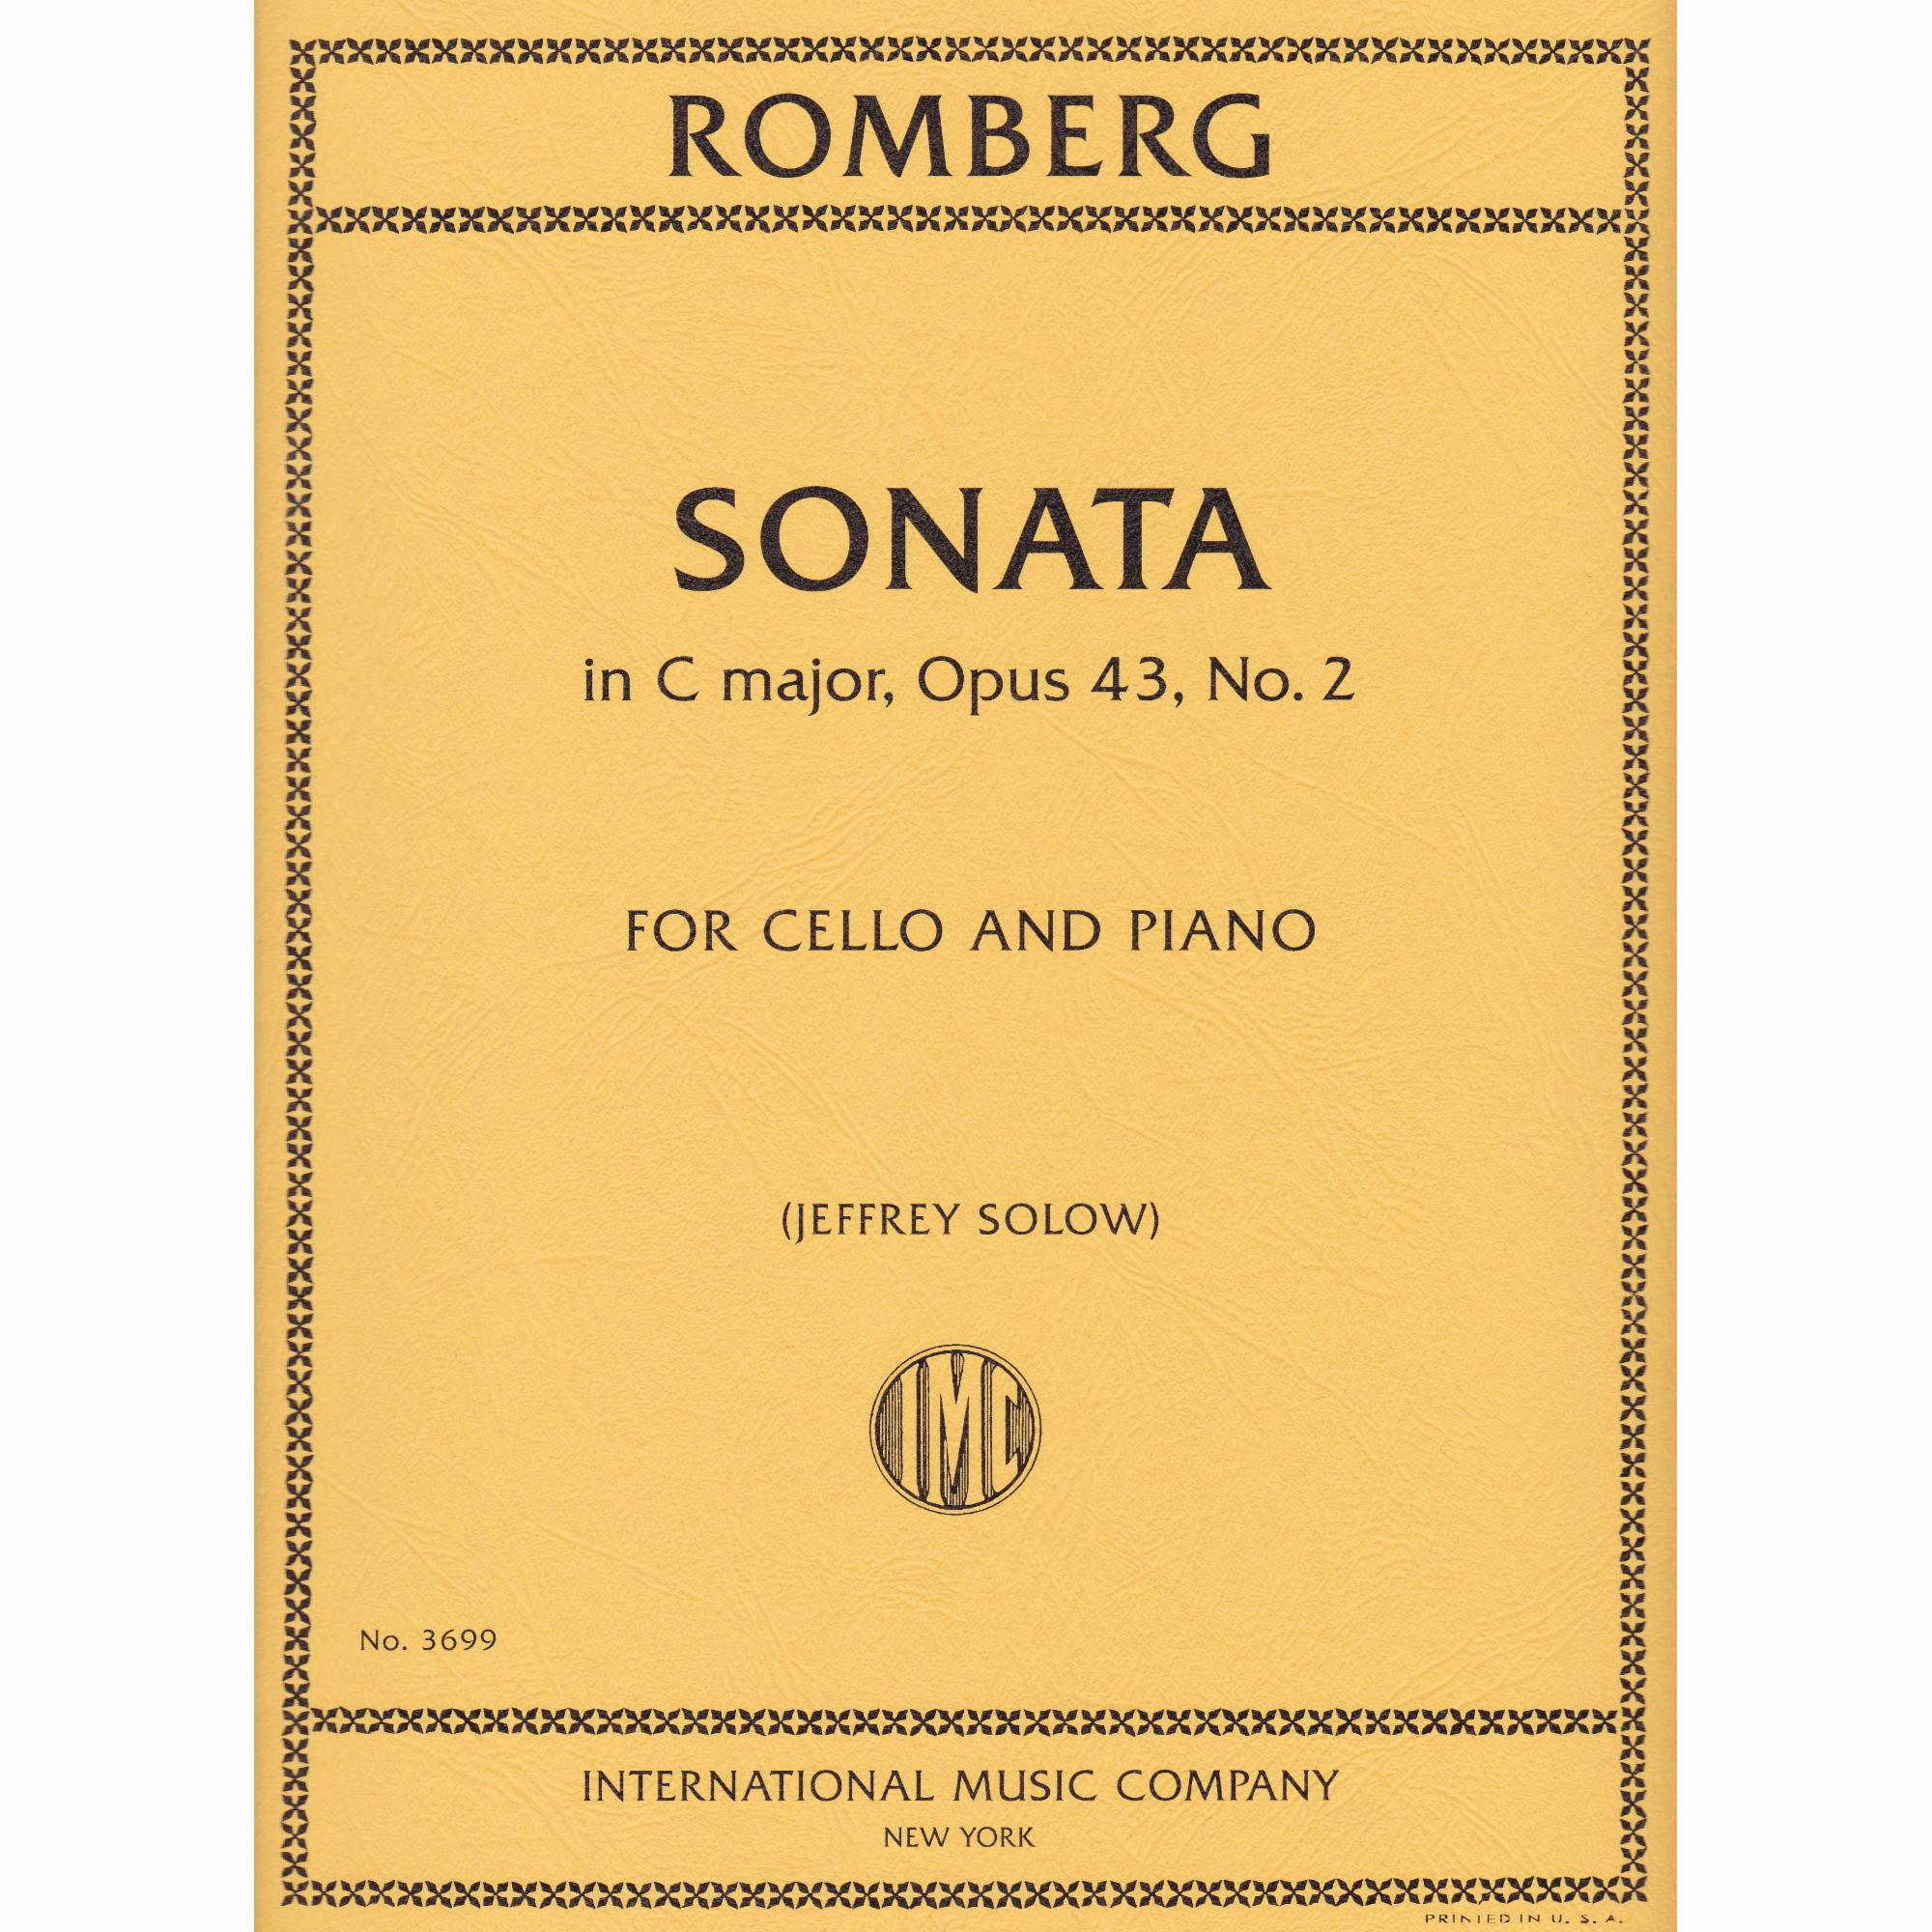 Cello Sonata in C Major, Op. 43, No. 2